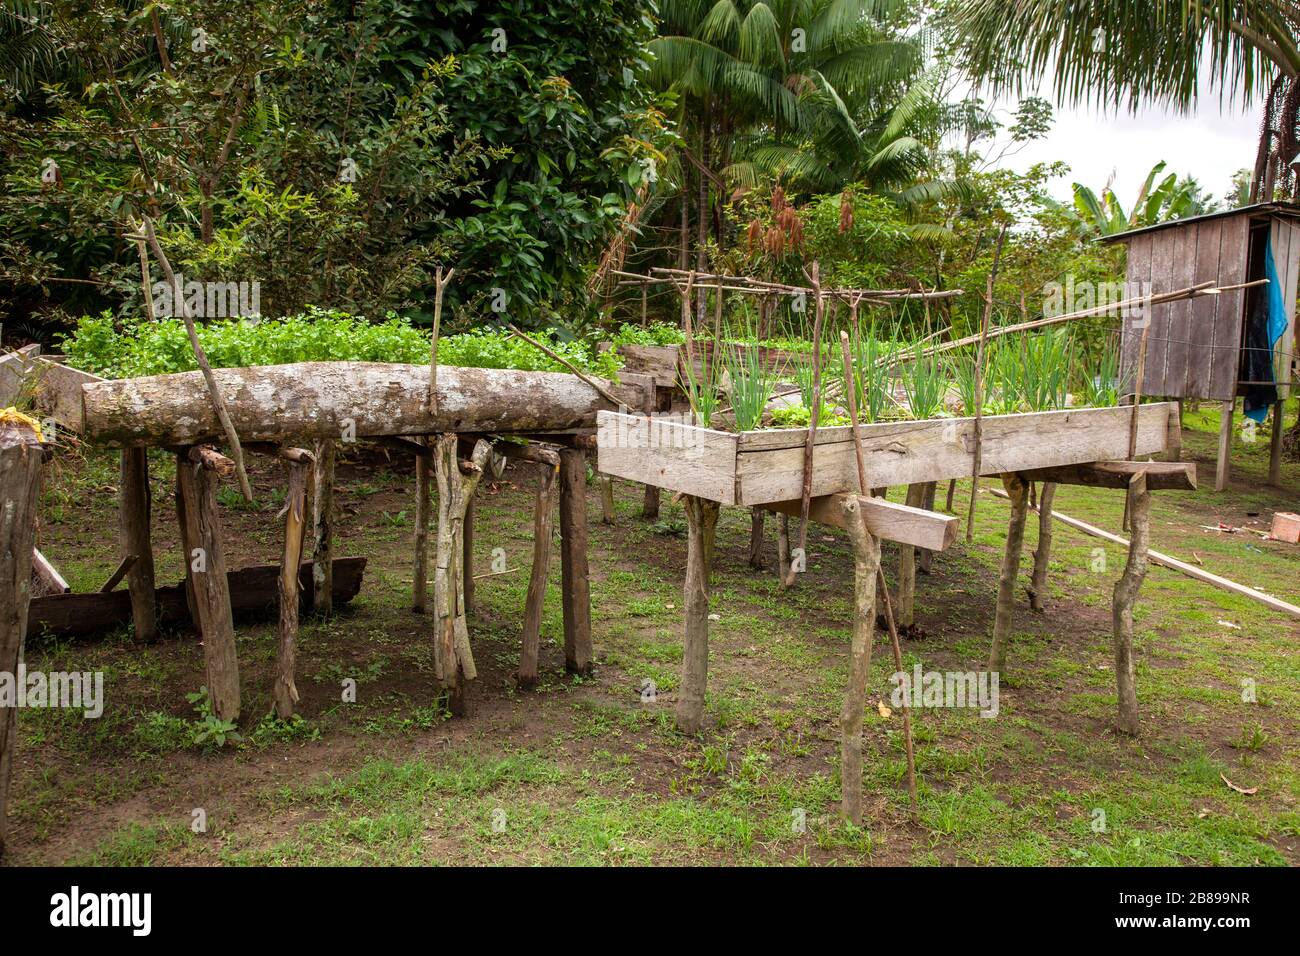 Camas de jardín elevadas de la India en la selva amazónica. Perú, América del Sur. Foto de stock